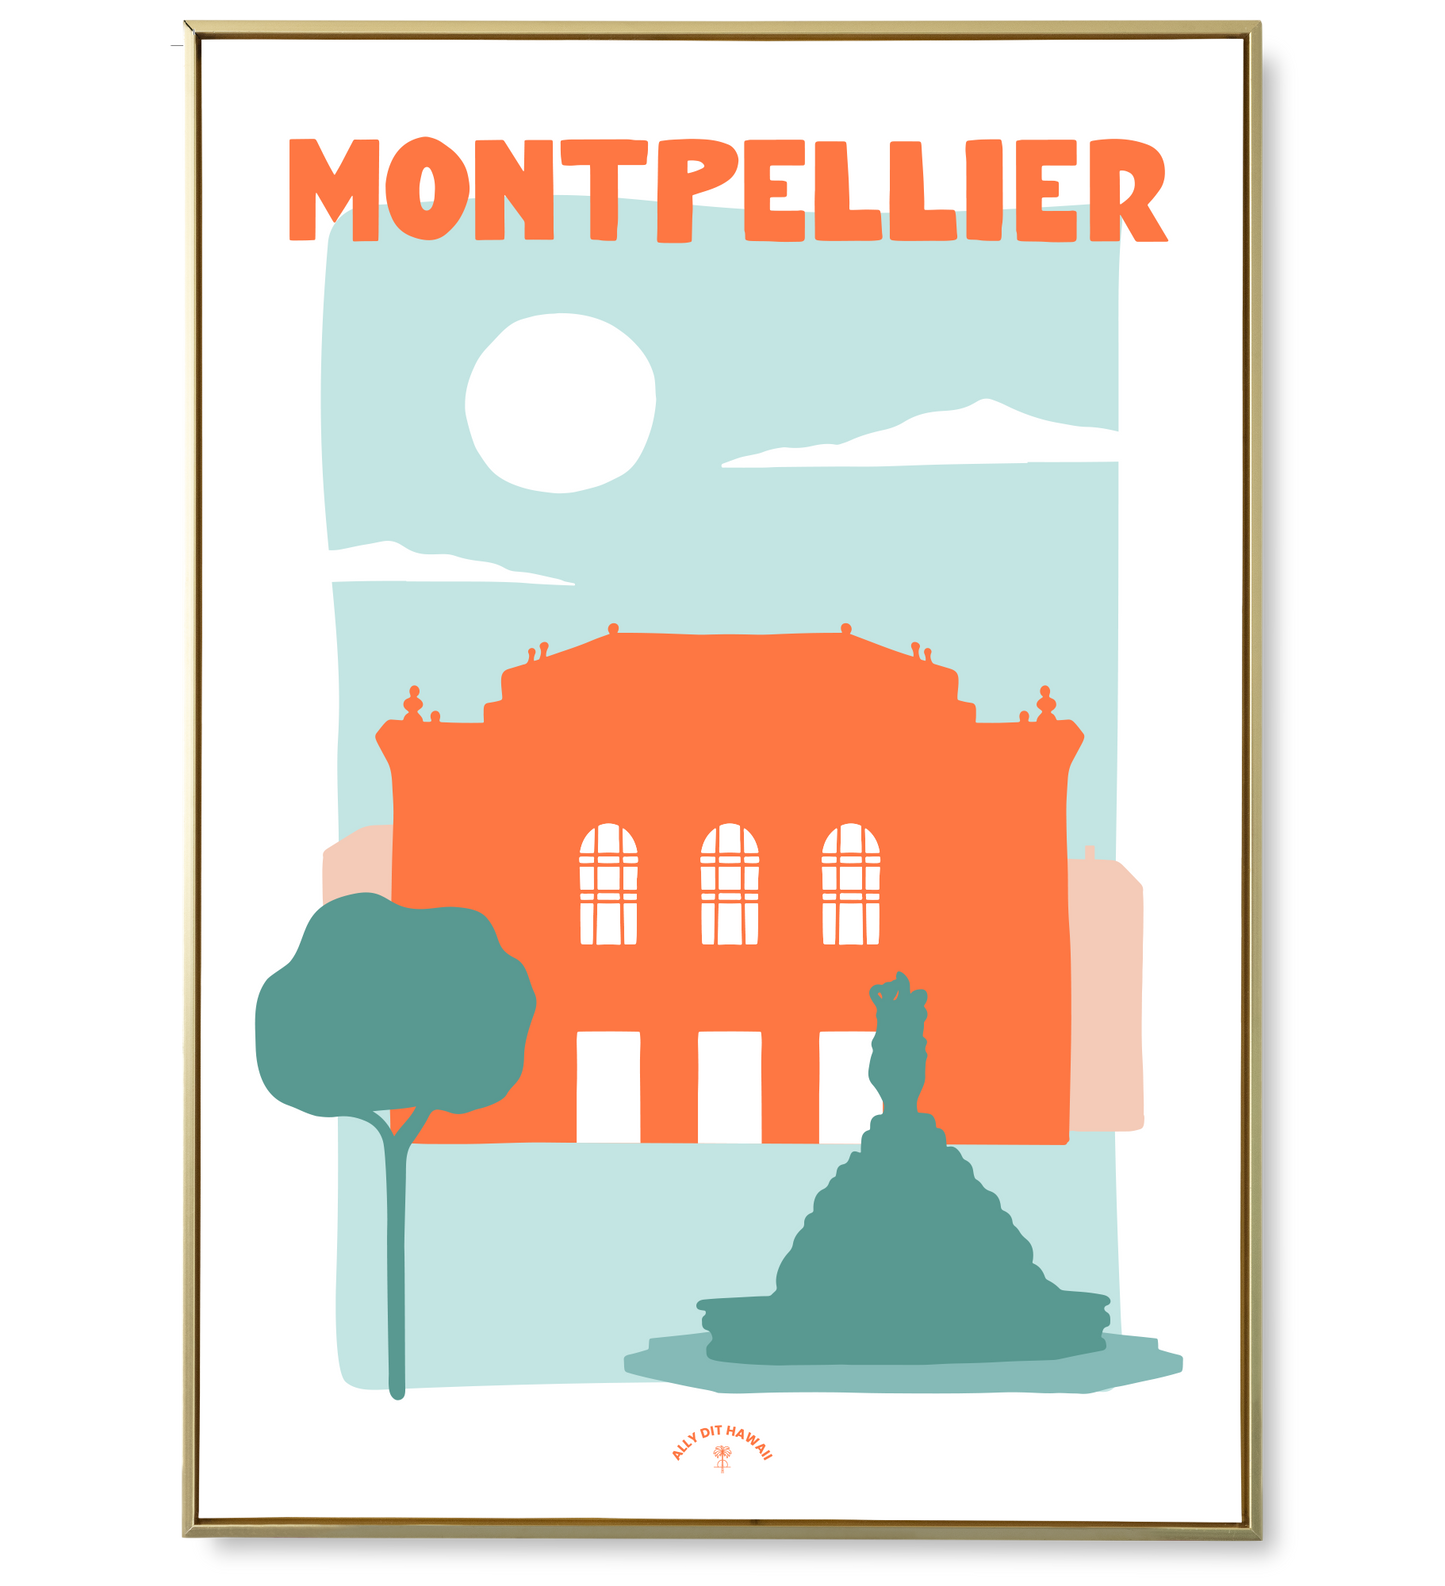 Affiche ville Montpellier